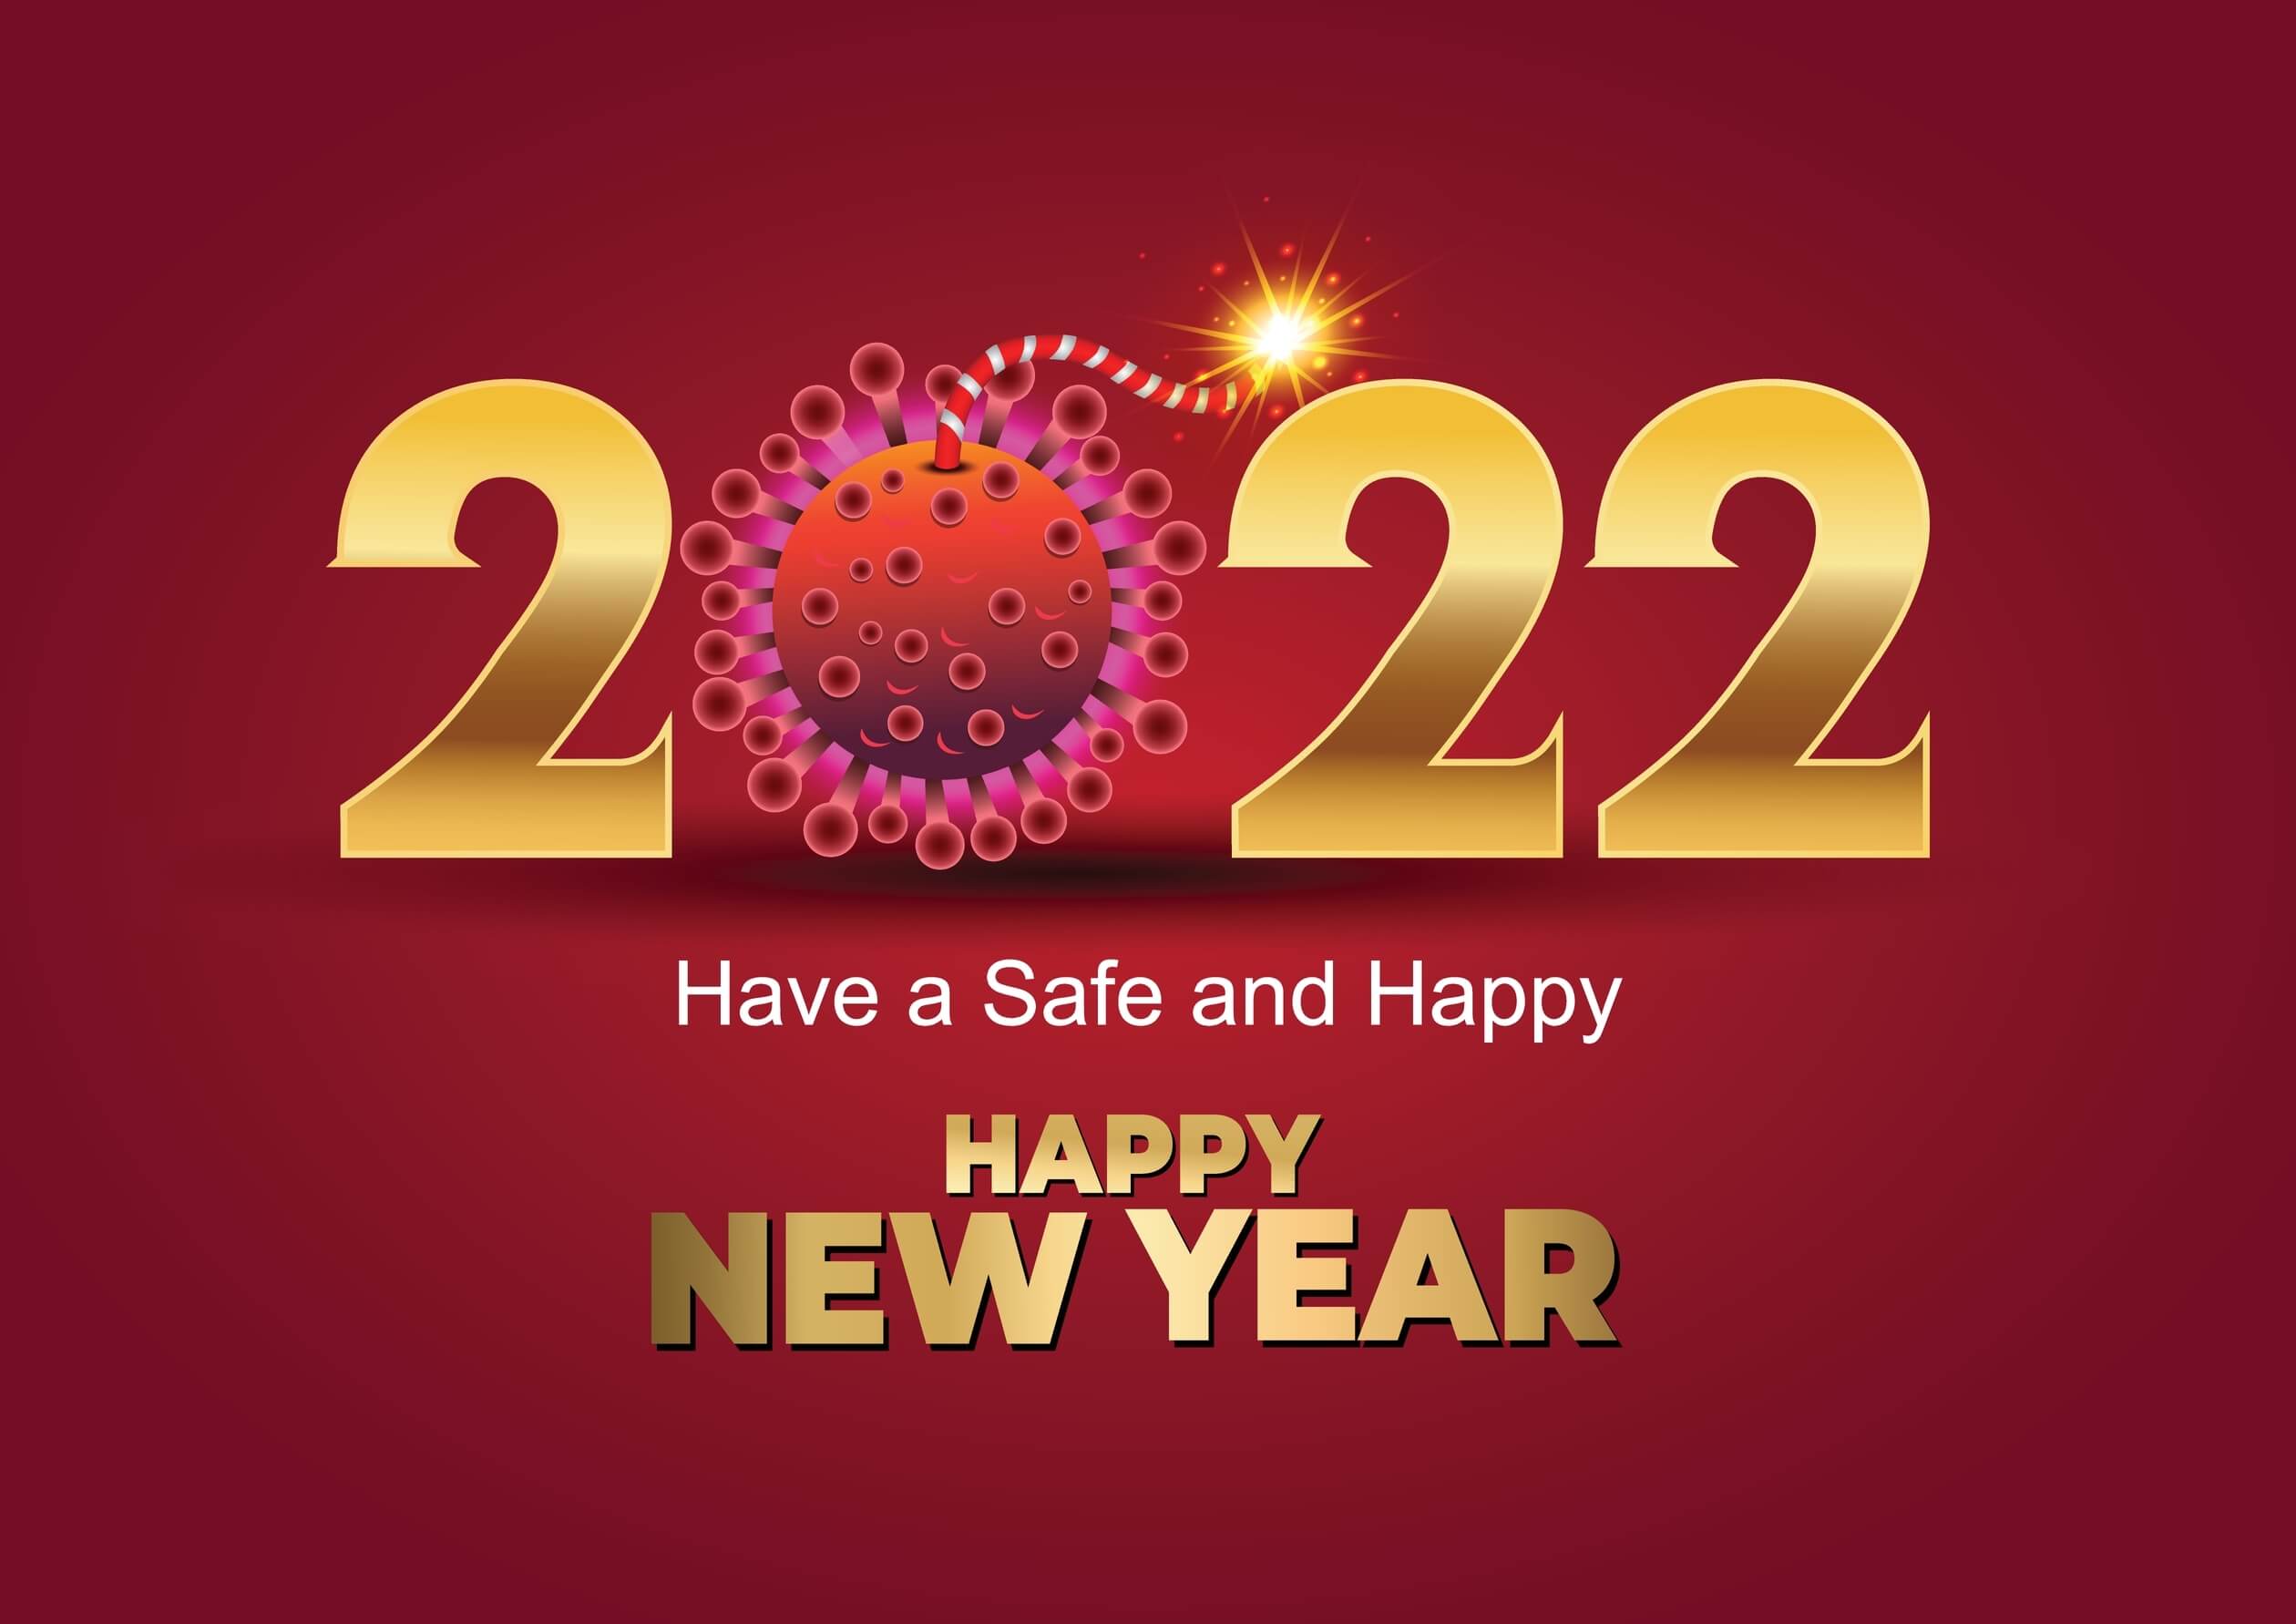 2022 welcome corona virus free year